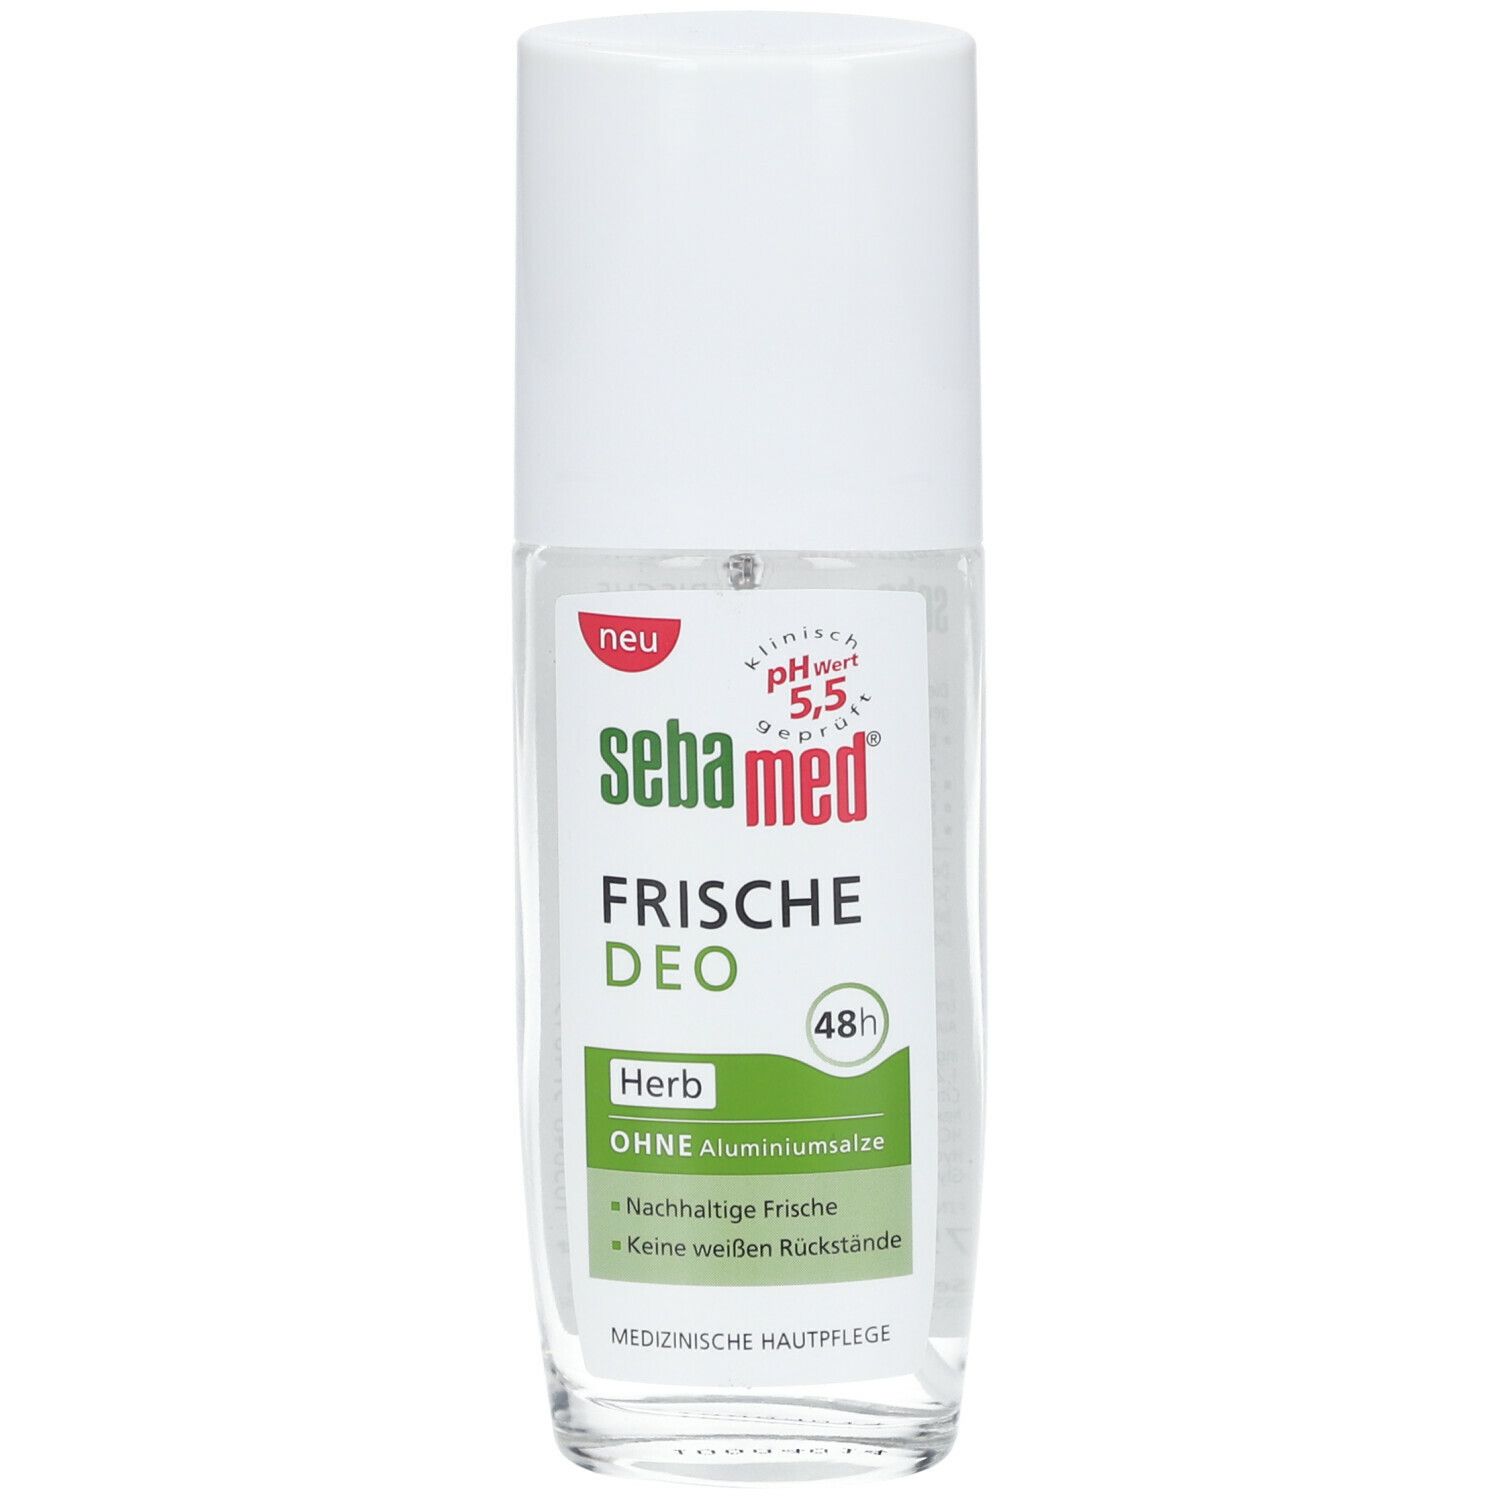 sebamed® Frische Deo-Spray - tarte